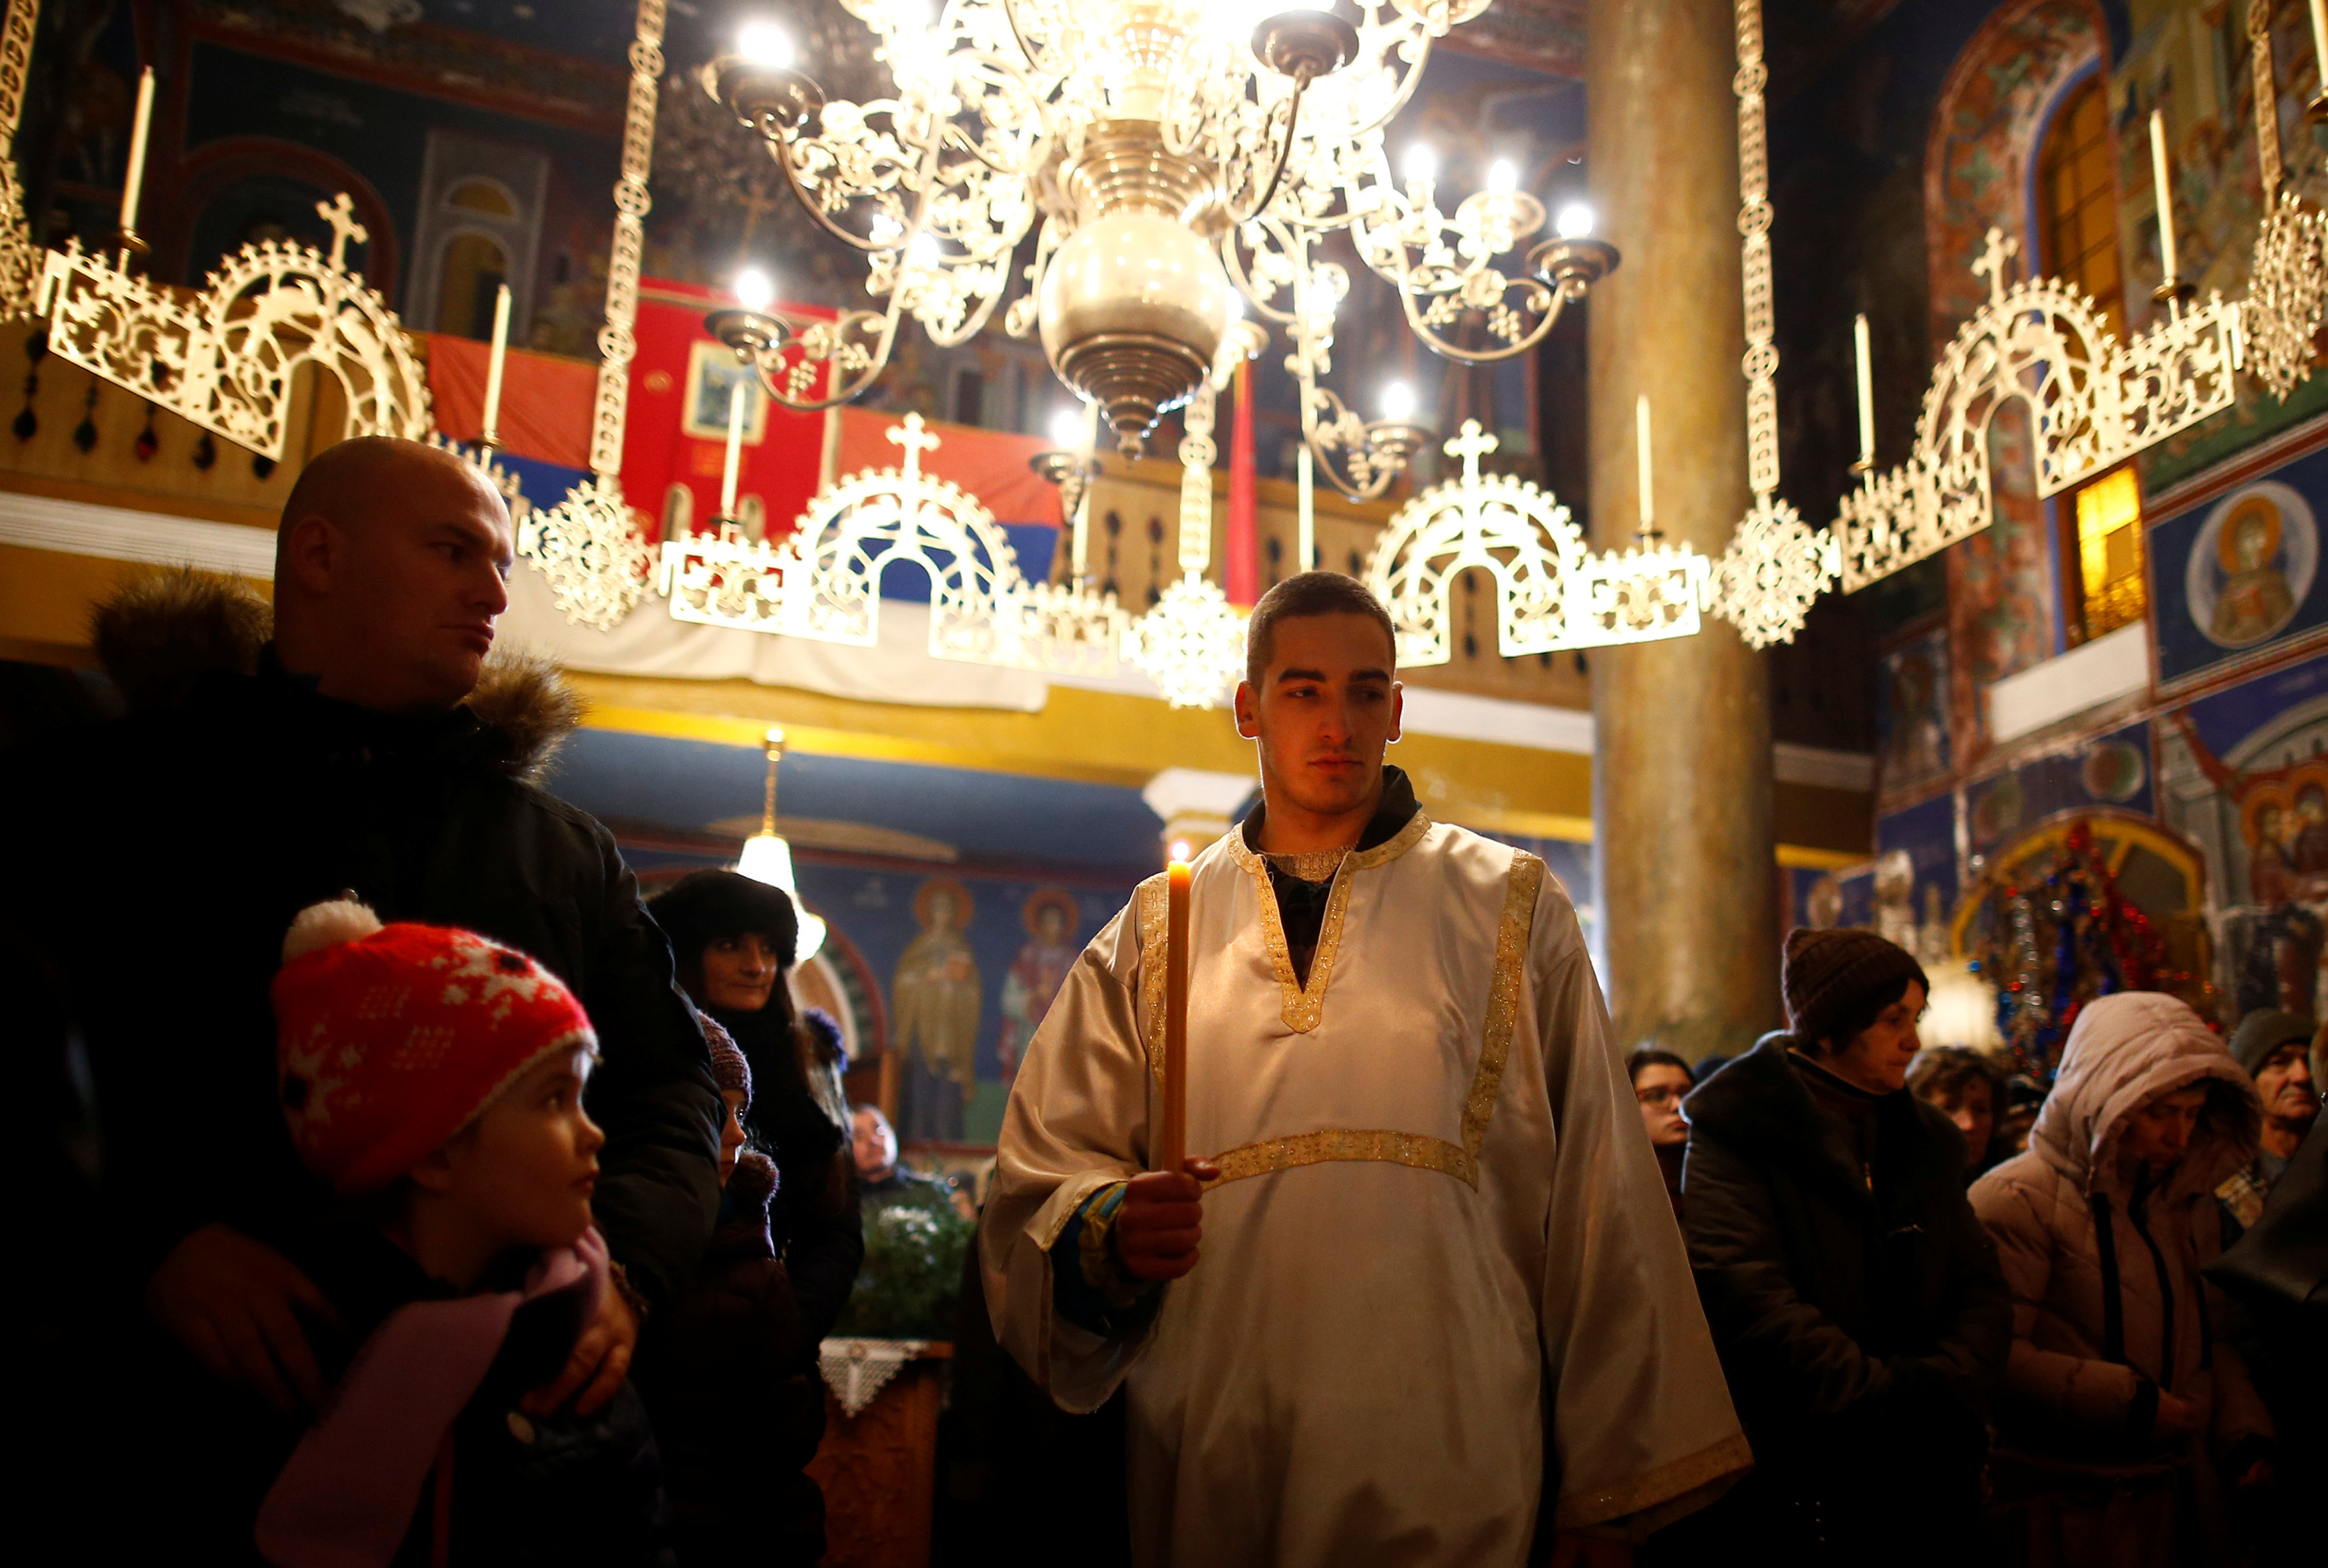 المصلون يقيمون شعائرهم خلال القداس فى البوسنة